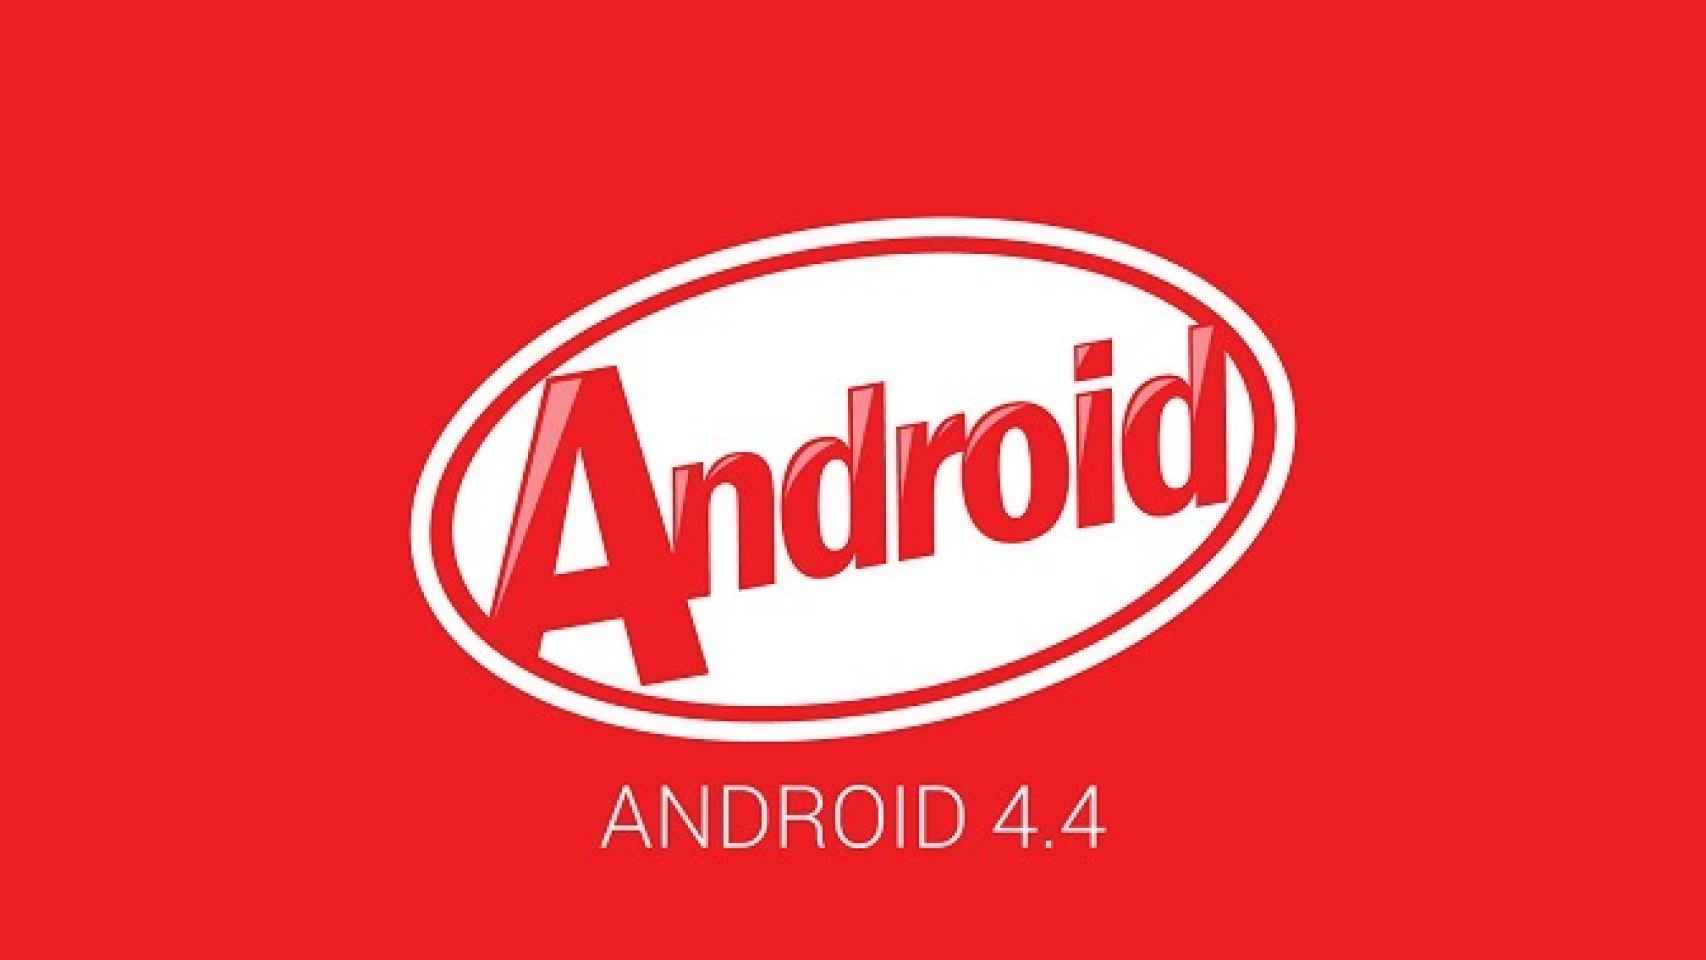 Nexus 5 en vídeo: Repaso a las principales novedades de Android 4.4 KitKat